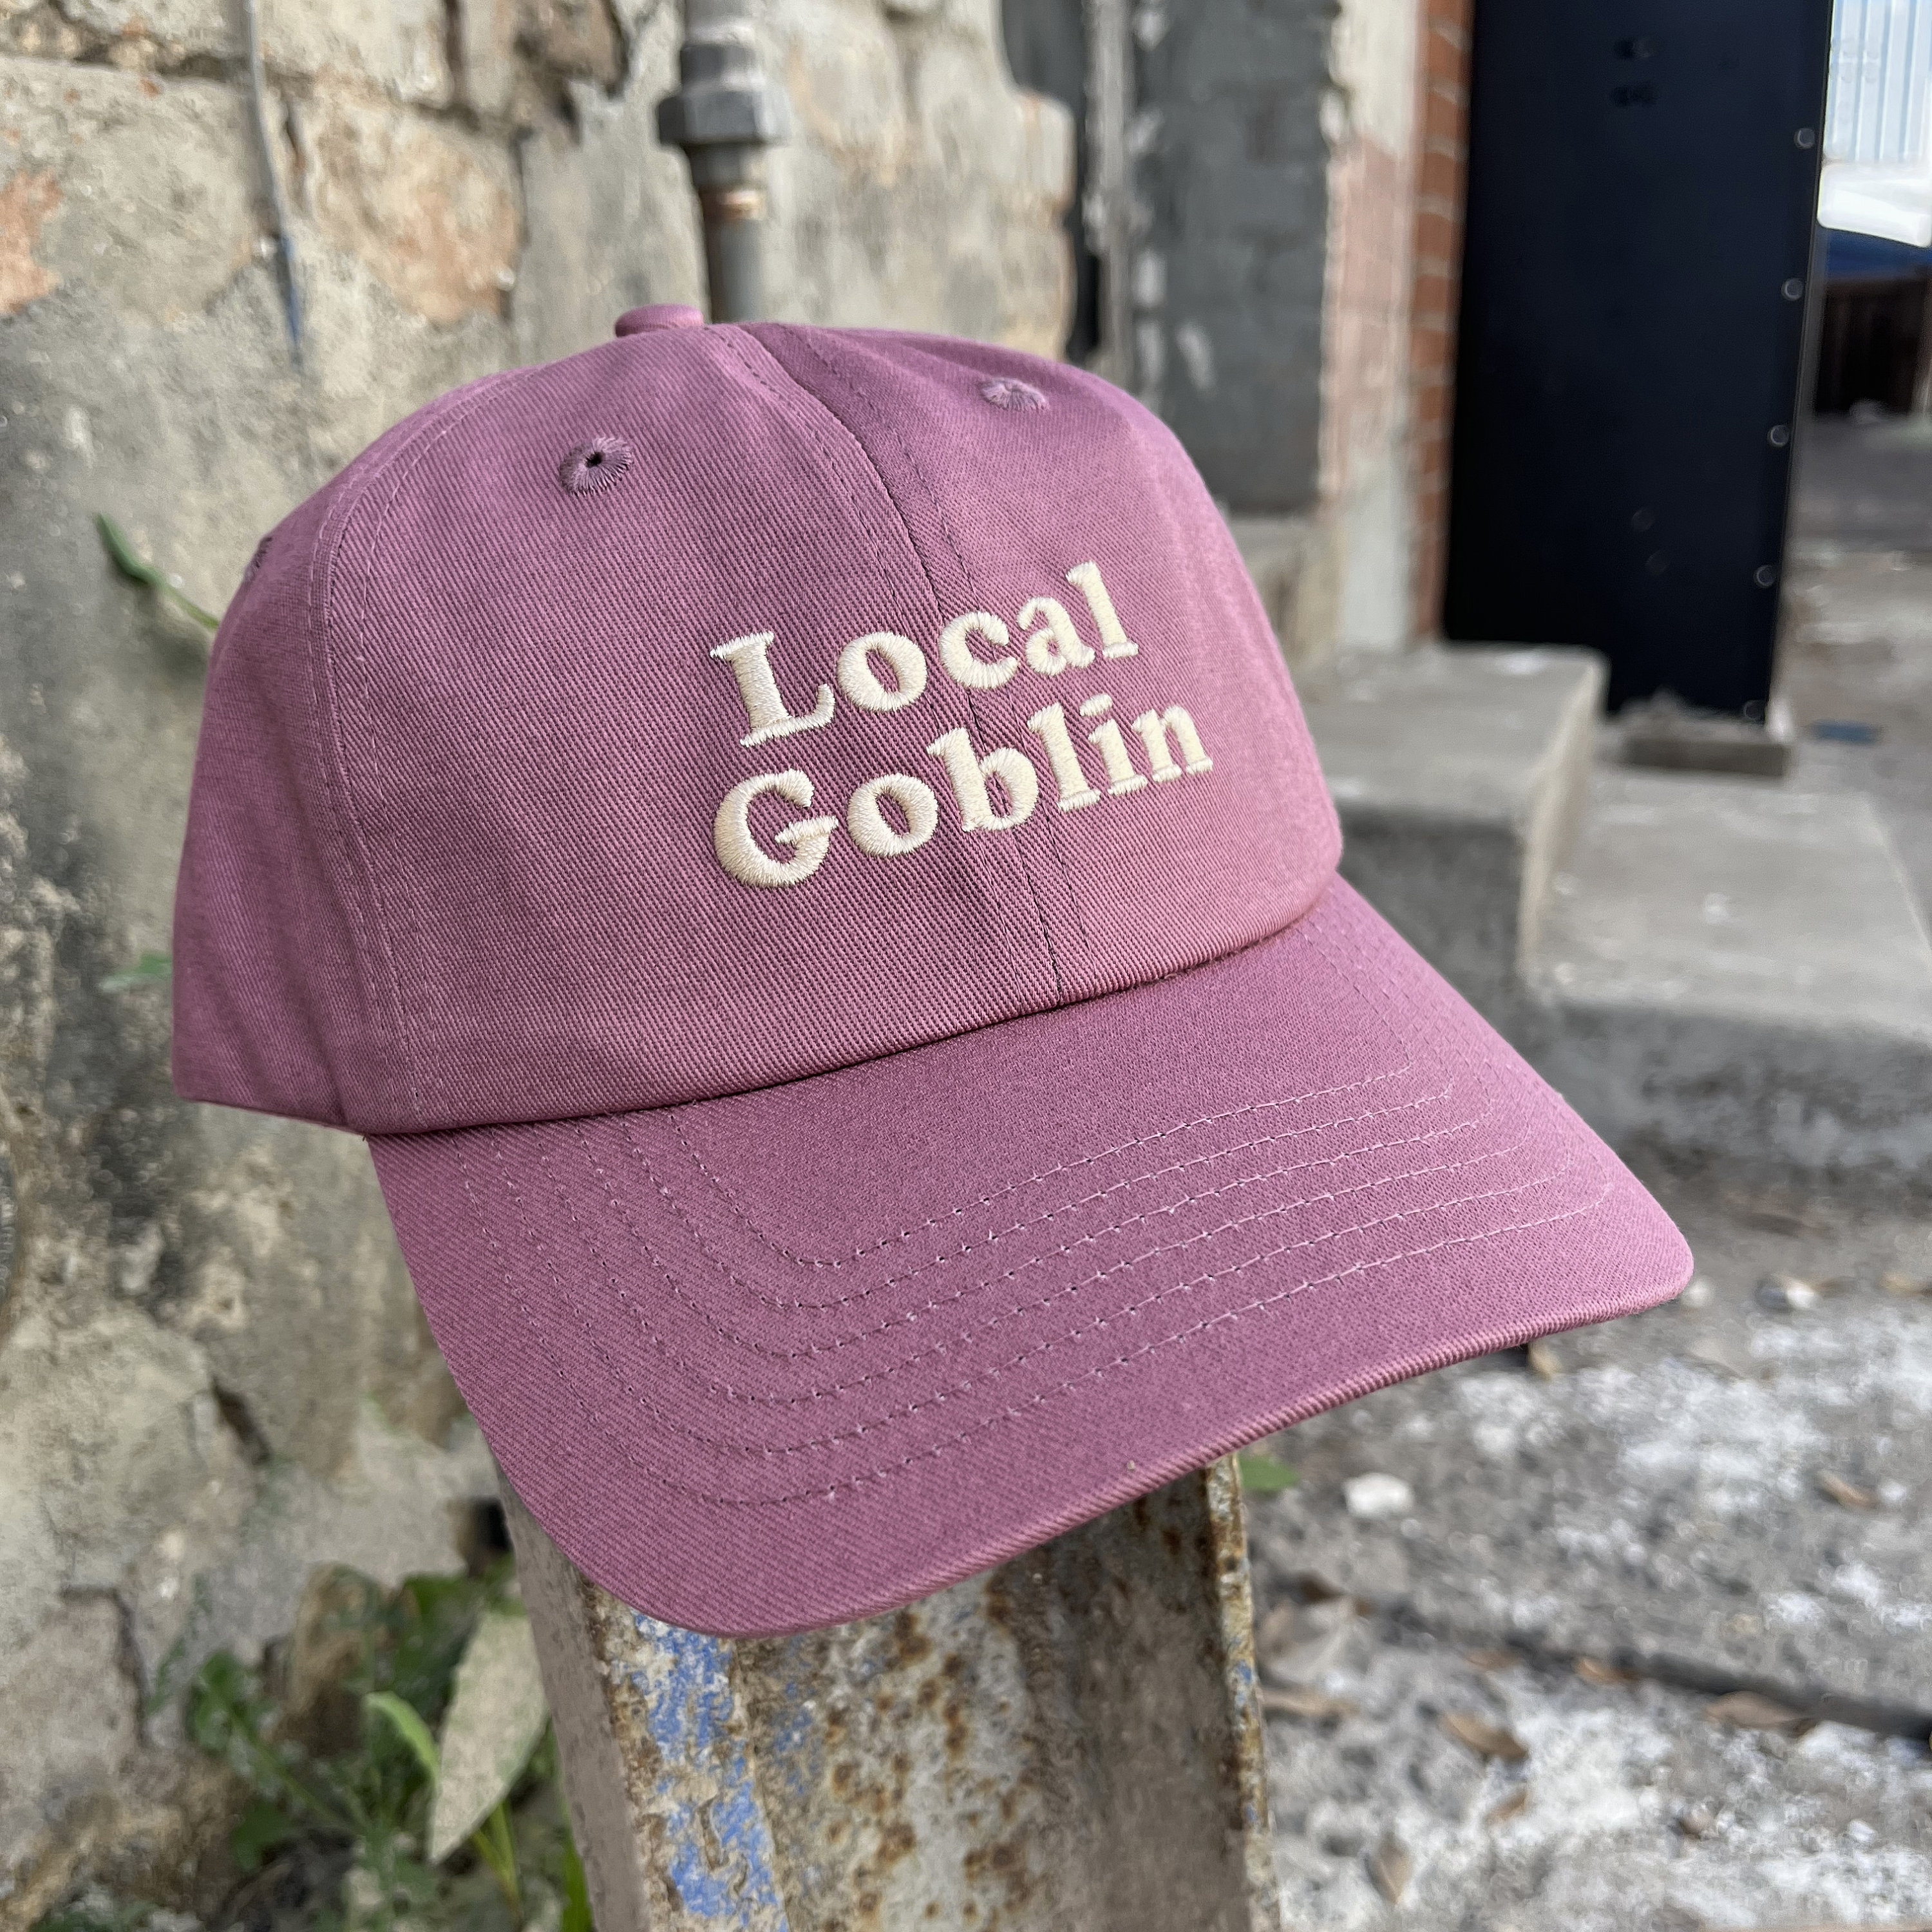 Local Goblin Hat Goblin Mode picture pic